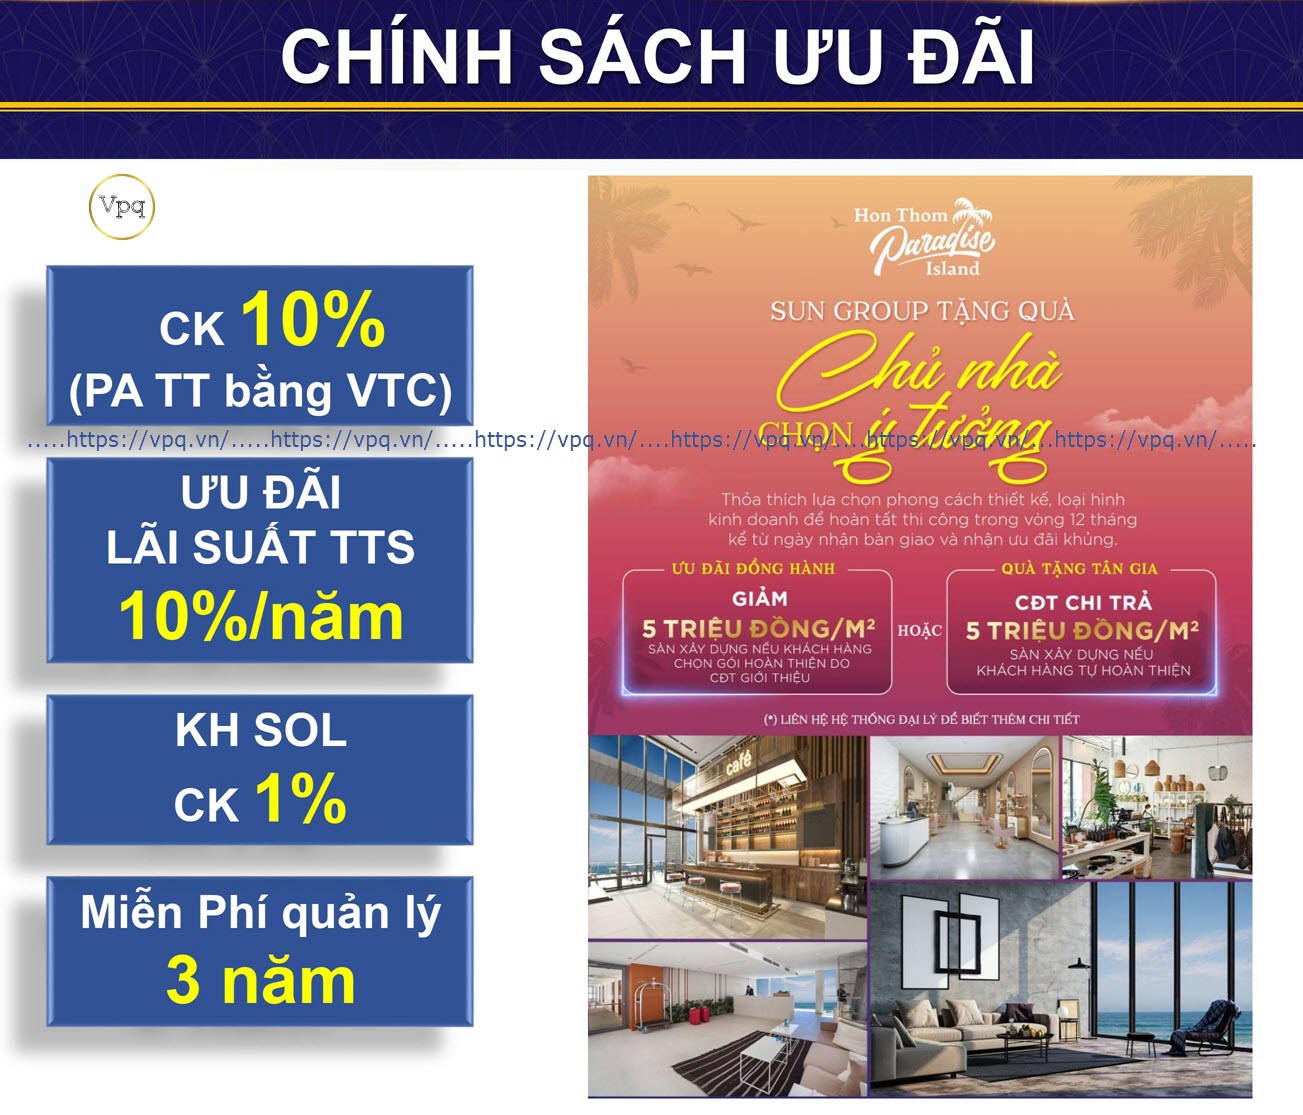 Chính sách bán hàng biệt thự Hòn Thơm - Commercial Villa